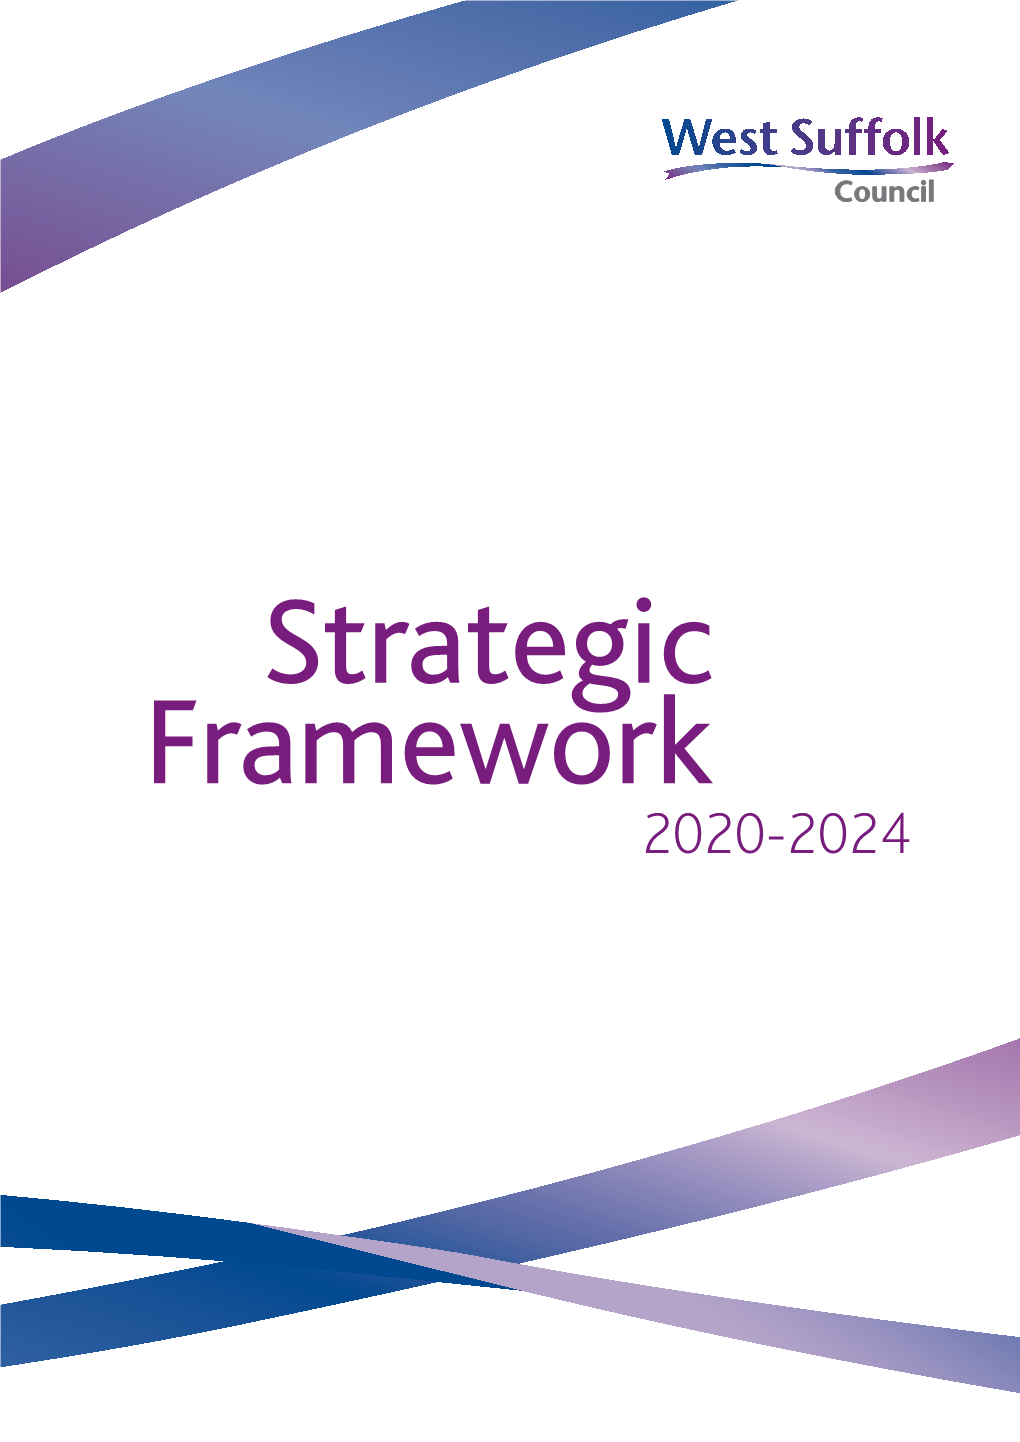 West Suffolk Council Strategic Framework 2020-2024